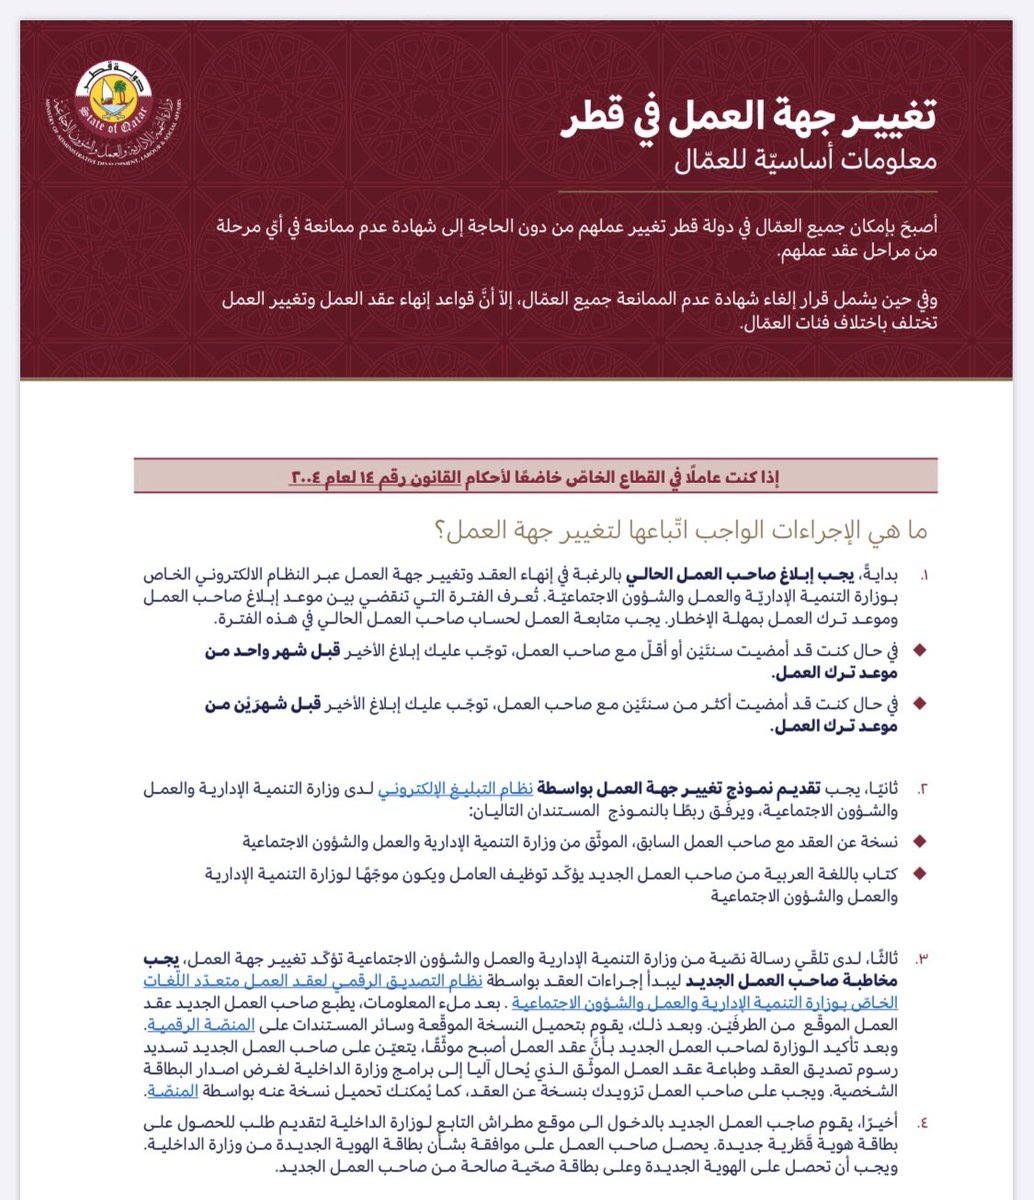 تغذية فريد بنس  Resign mash Hiring وزارة العمل قطر العقد الالكتروني Openly Ambiguous lead